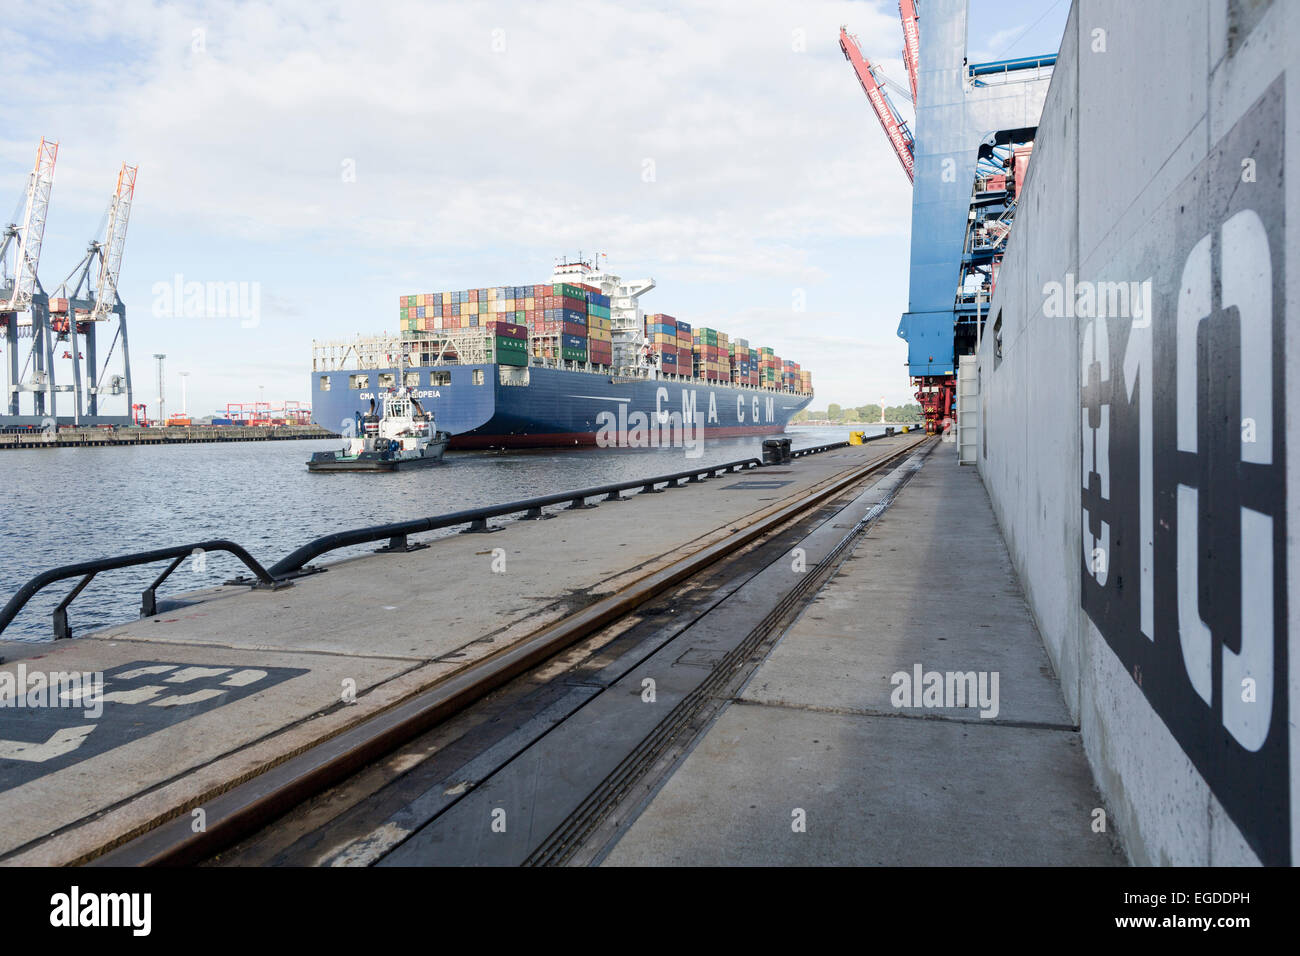 Les porte-conteneurs remorqué à quai dans le port, Burchardkai, Hambourg, Allemagne Banque D'Images